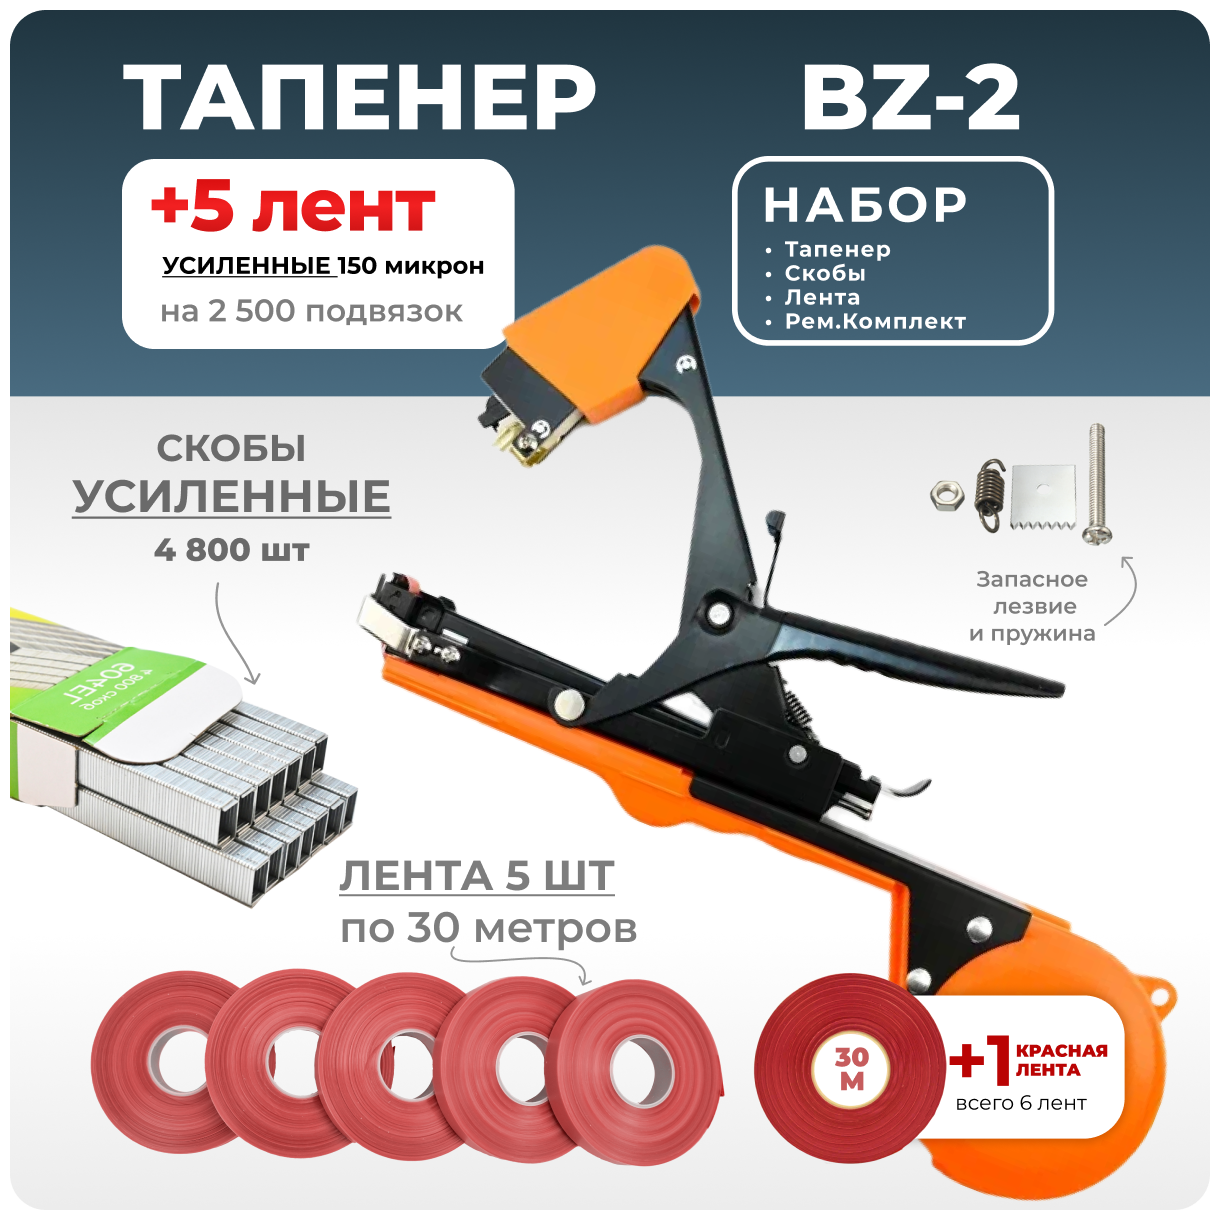 Тапенер для подвязки Bz-2 + 5 красных лент + скобы Агромадана 4.800 шт + ремкомплект / Готовый комплект для подвязки - фотография № 1